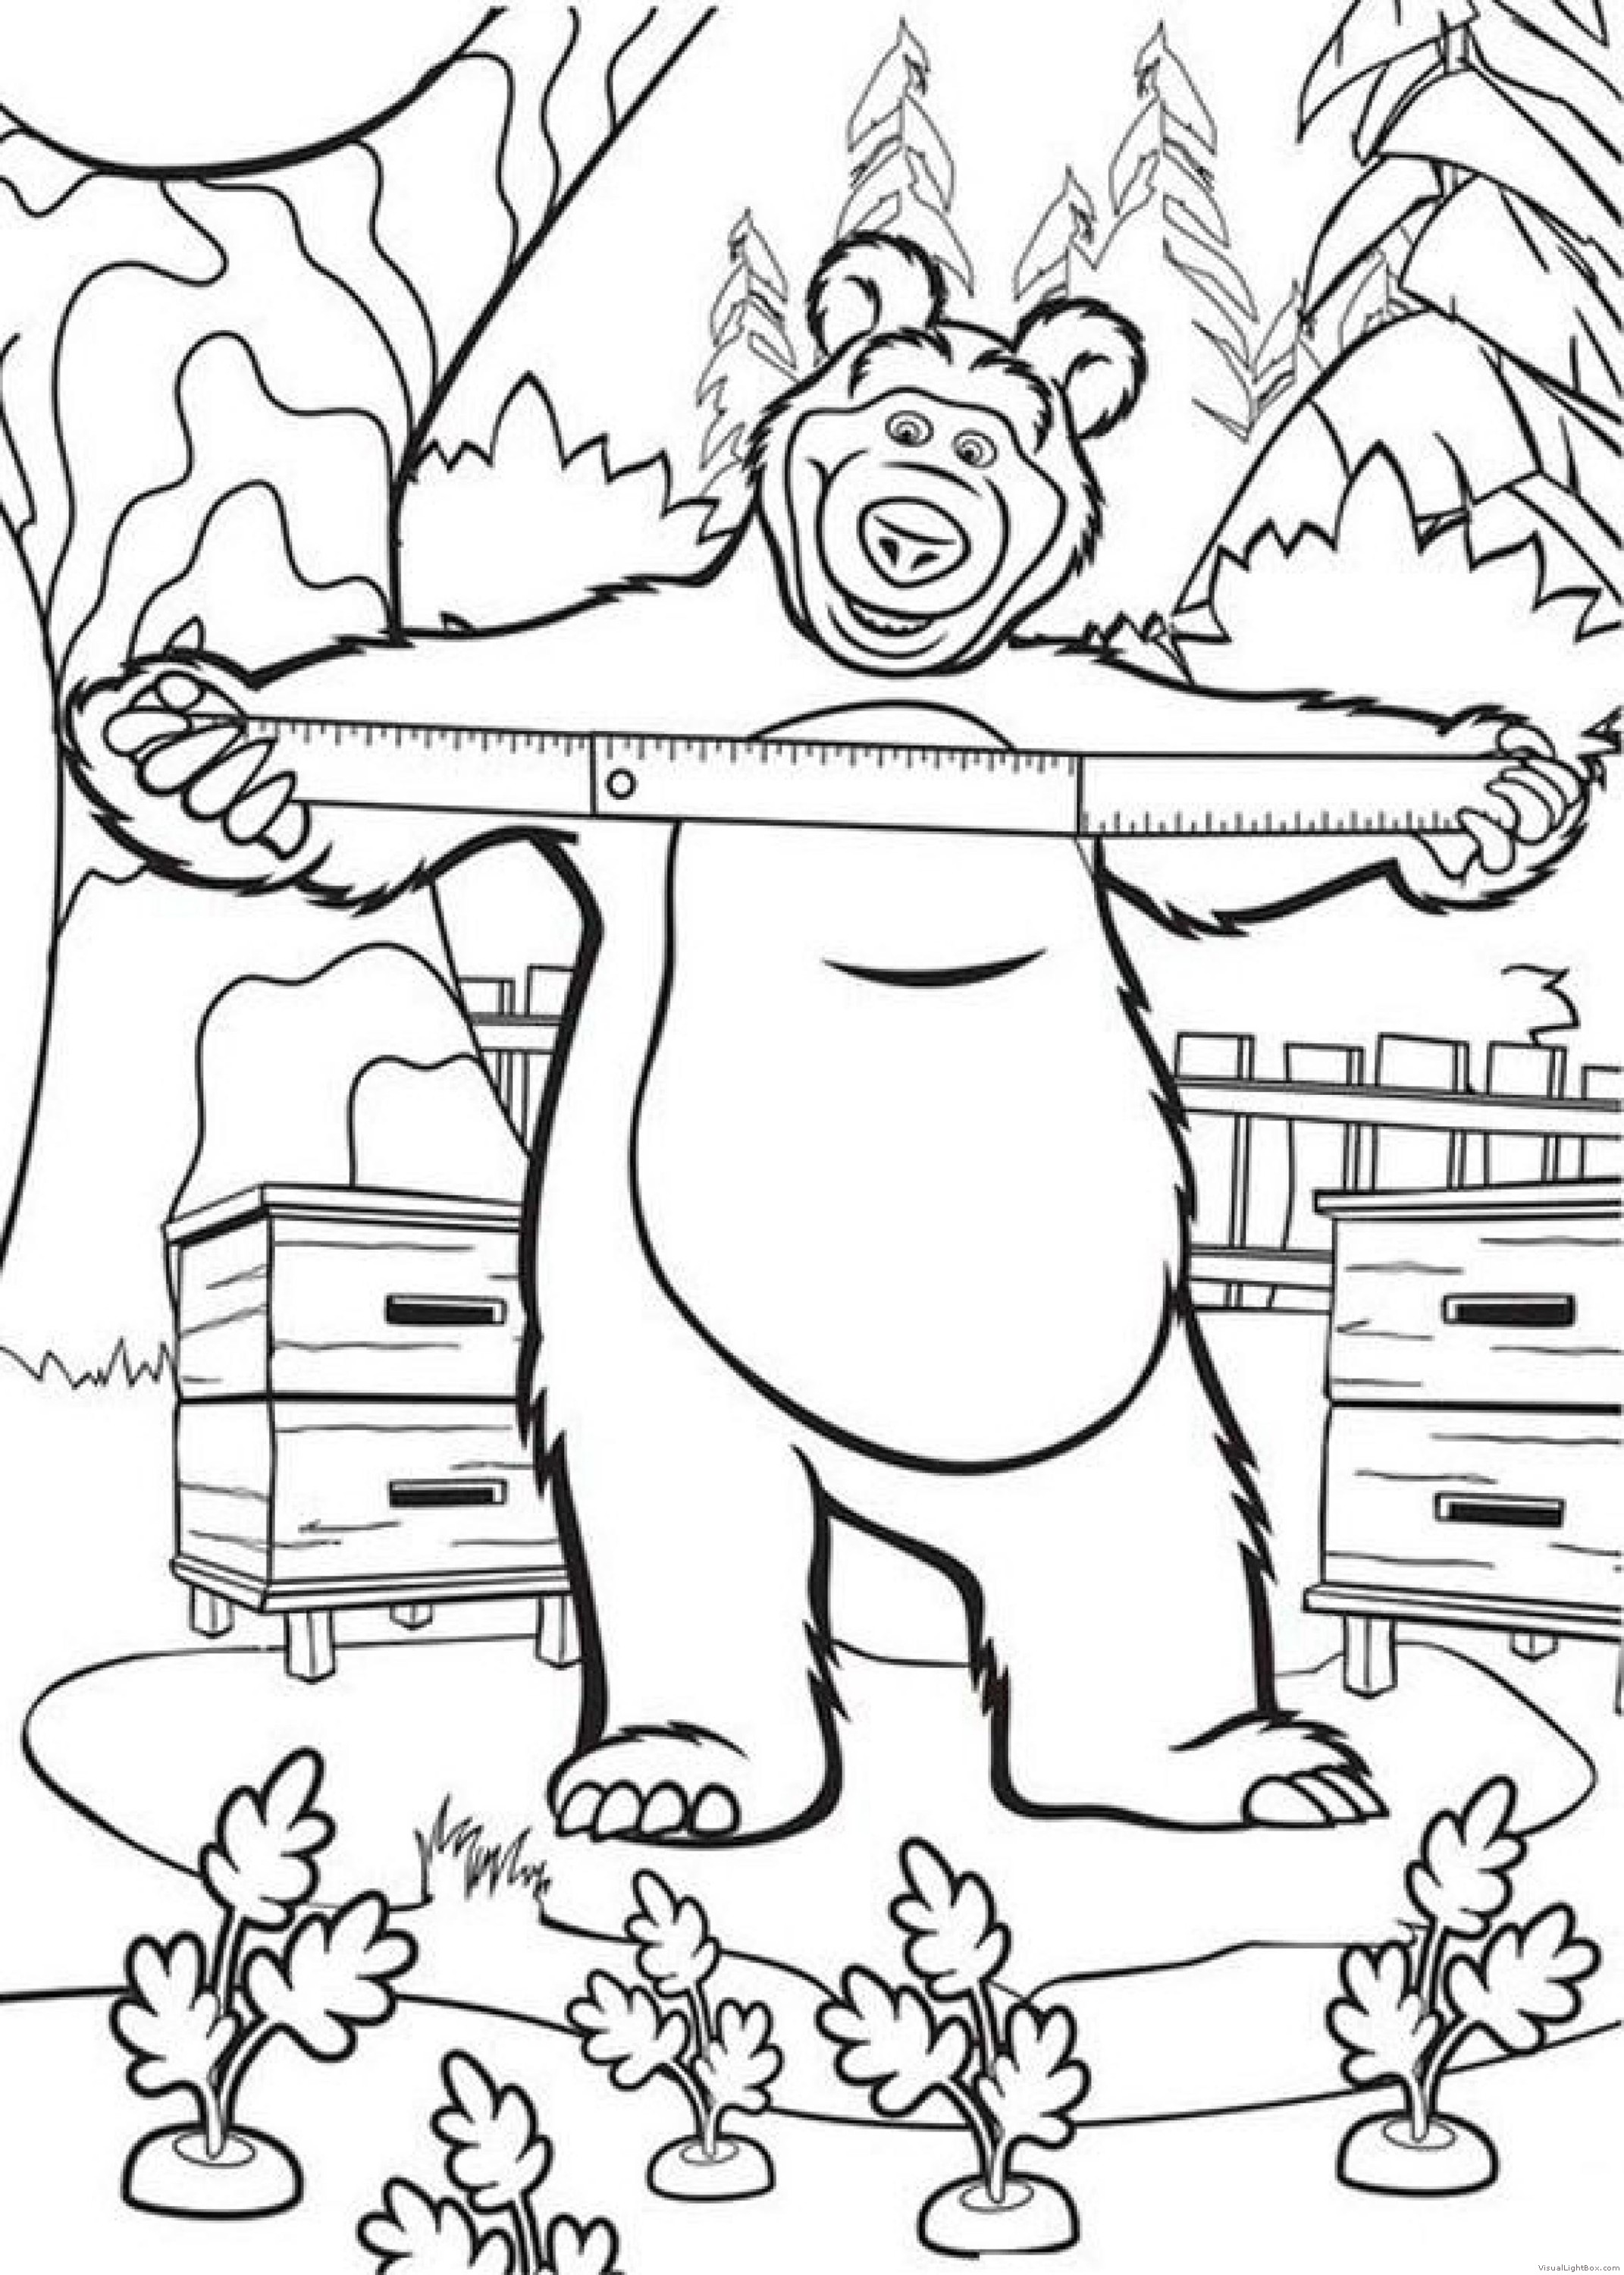 Маша и медведь печать. Раскраска. Маша и медведь. Маша и медведь рисунок. Раскраска мишка из мультика Маша и медведь. Медведь из мультфильма Маша и медведь раскраска.